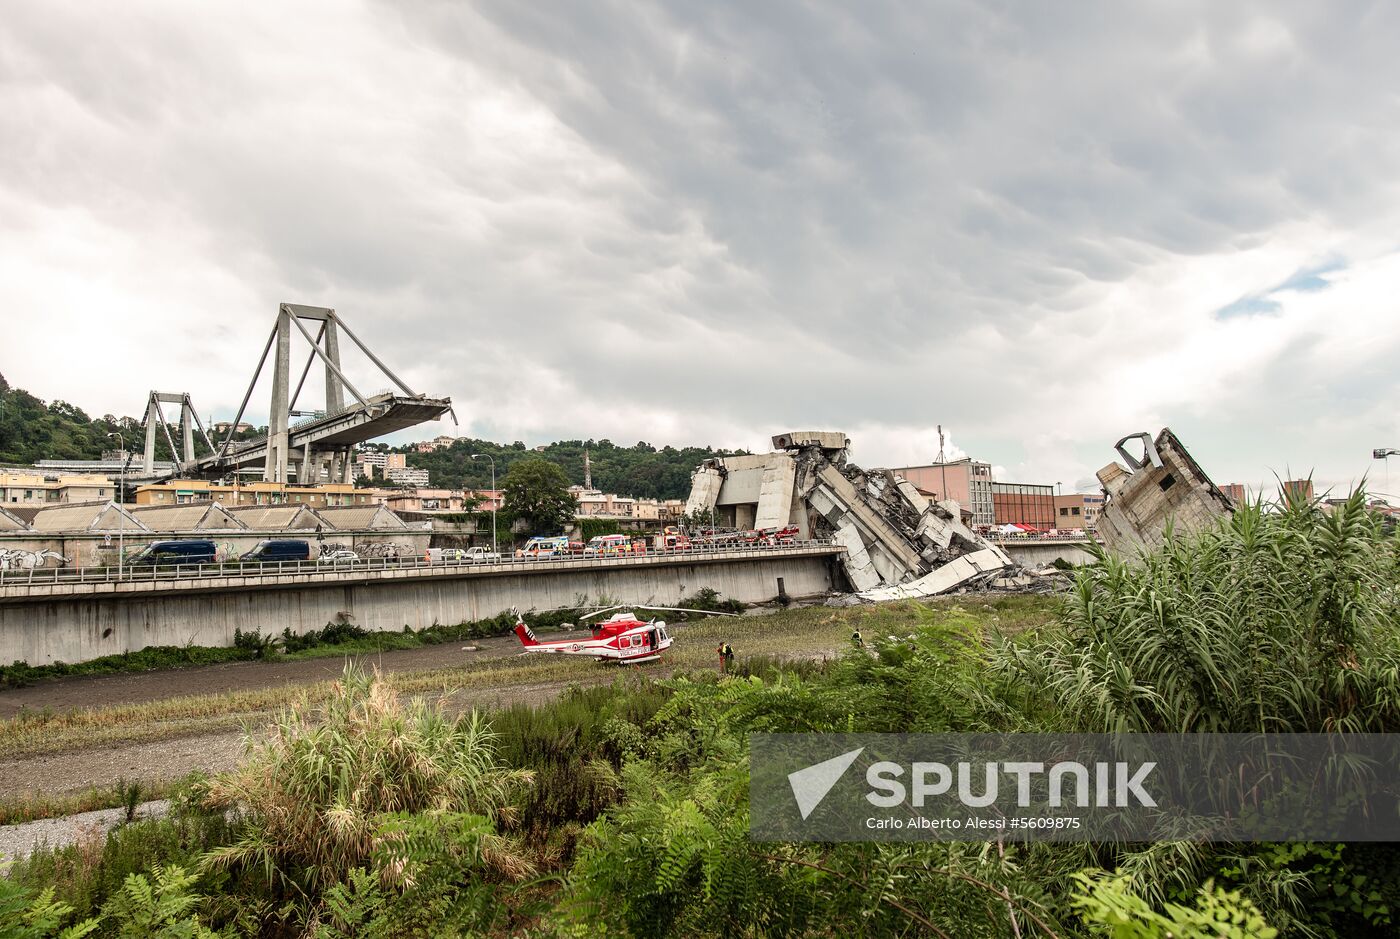 Highway bridge collapses in Genoa